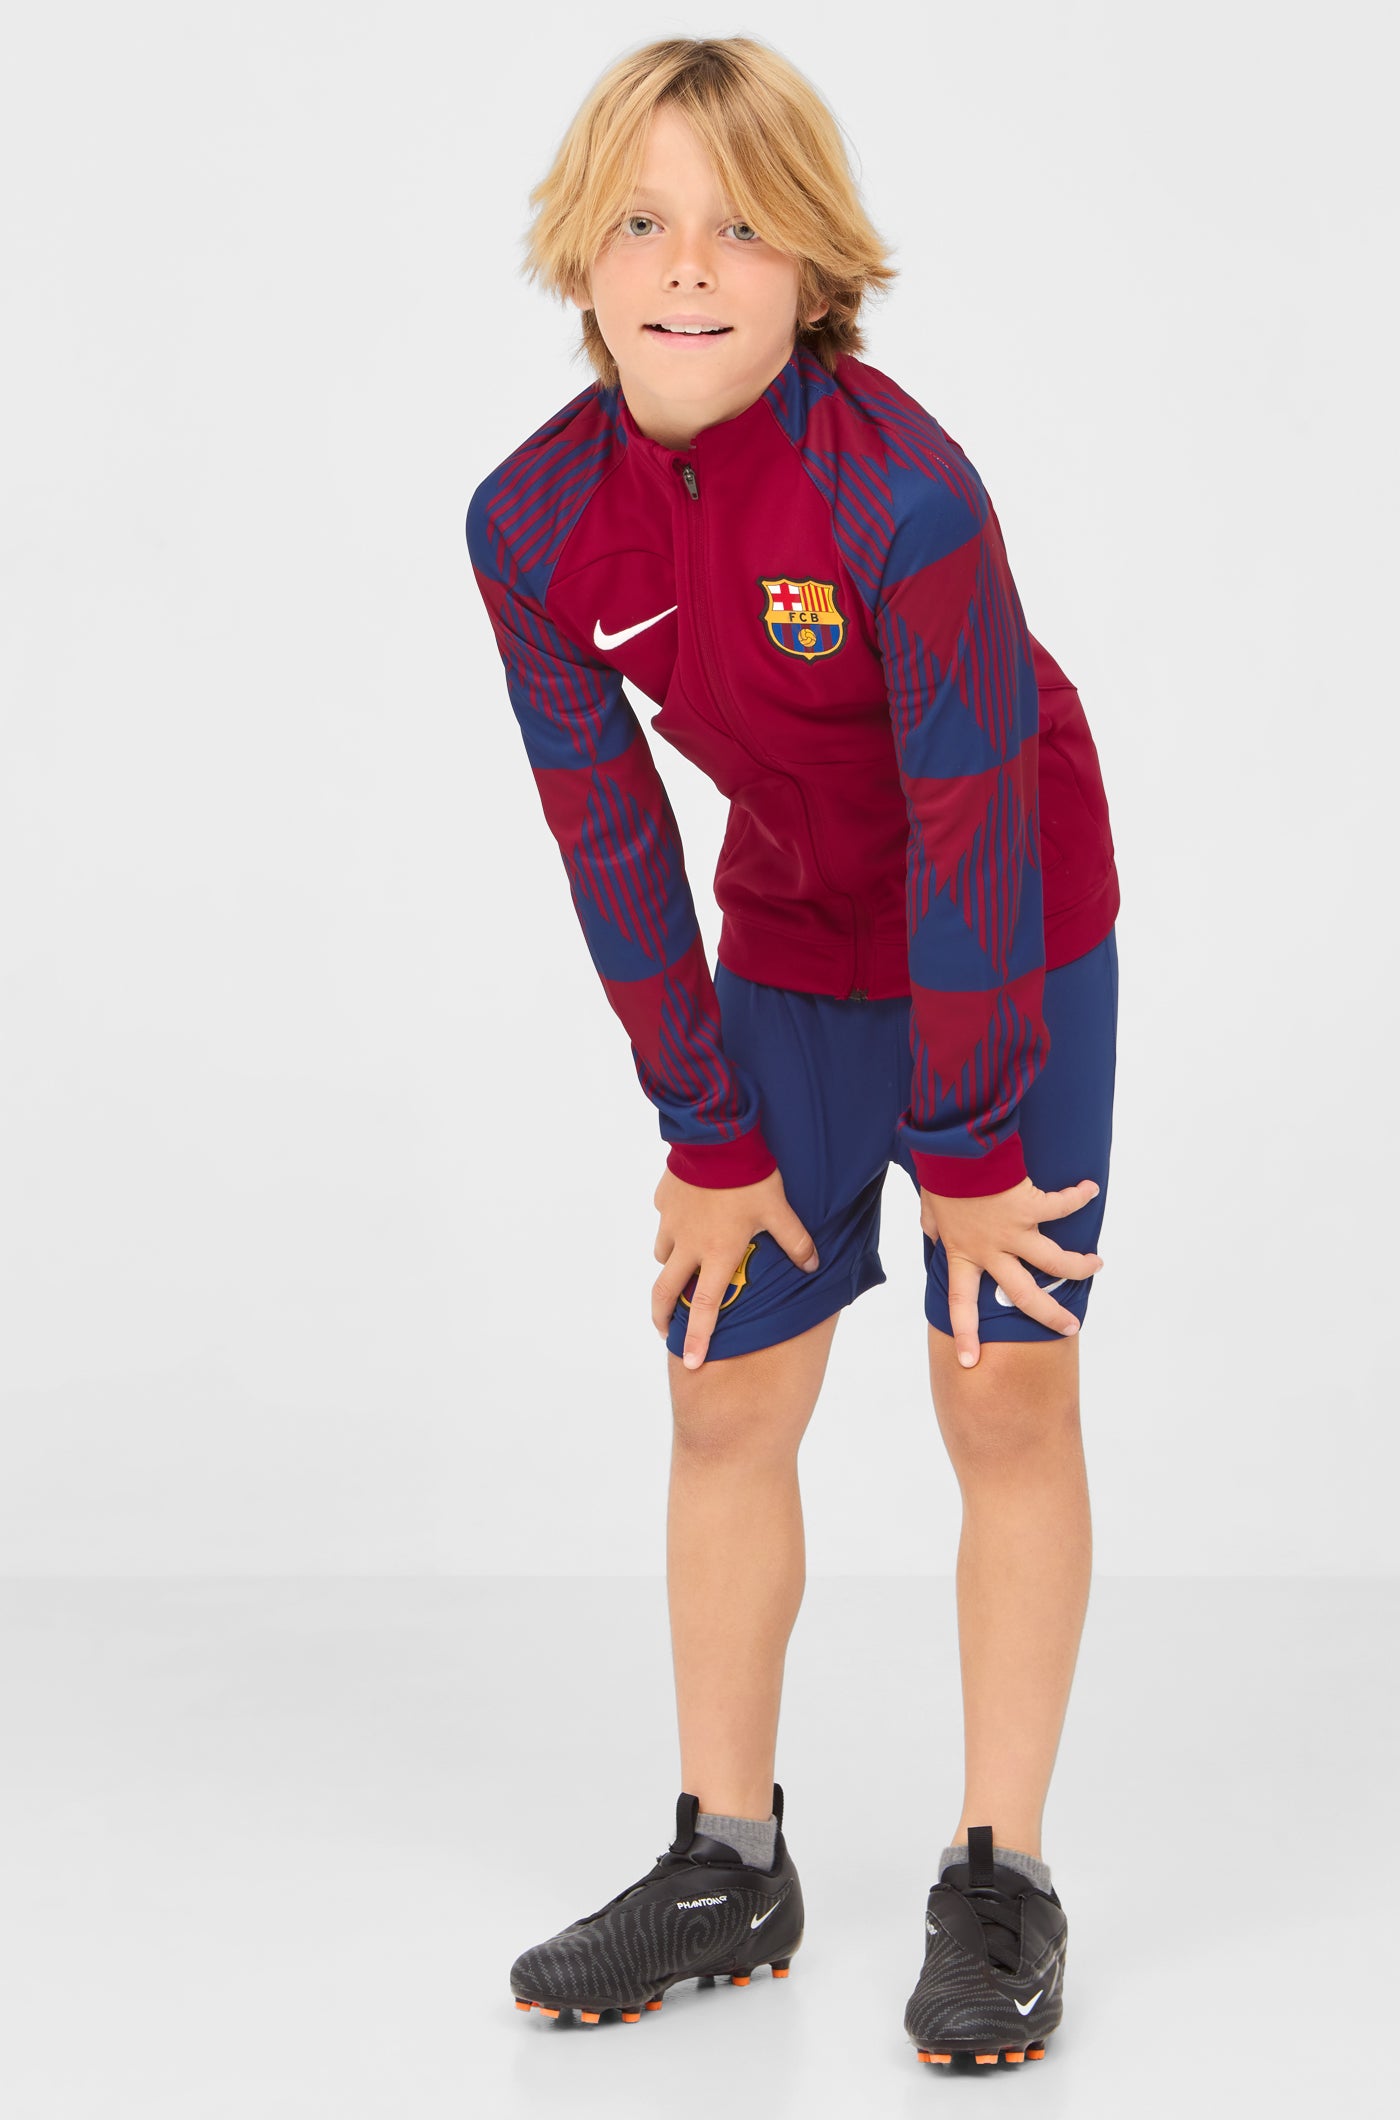 Jaqueta prepartit primer equipament FC Barcelona 23/24 - Junior